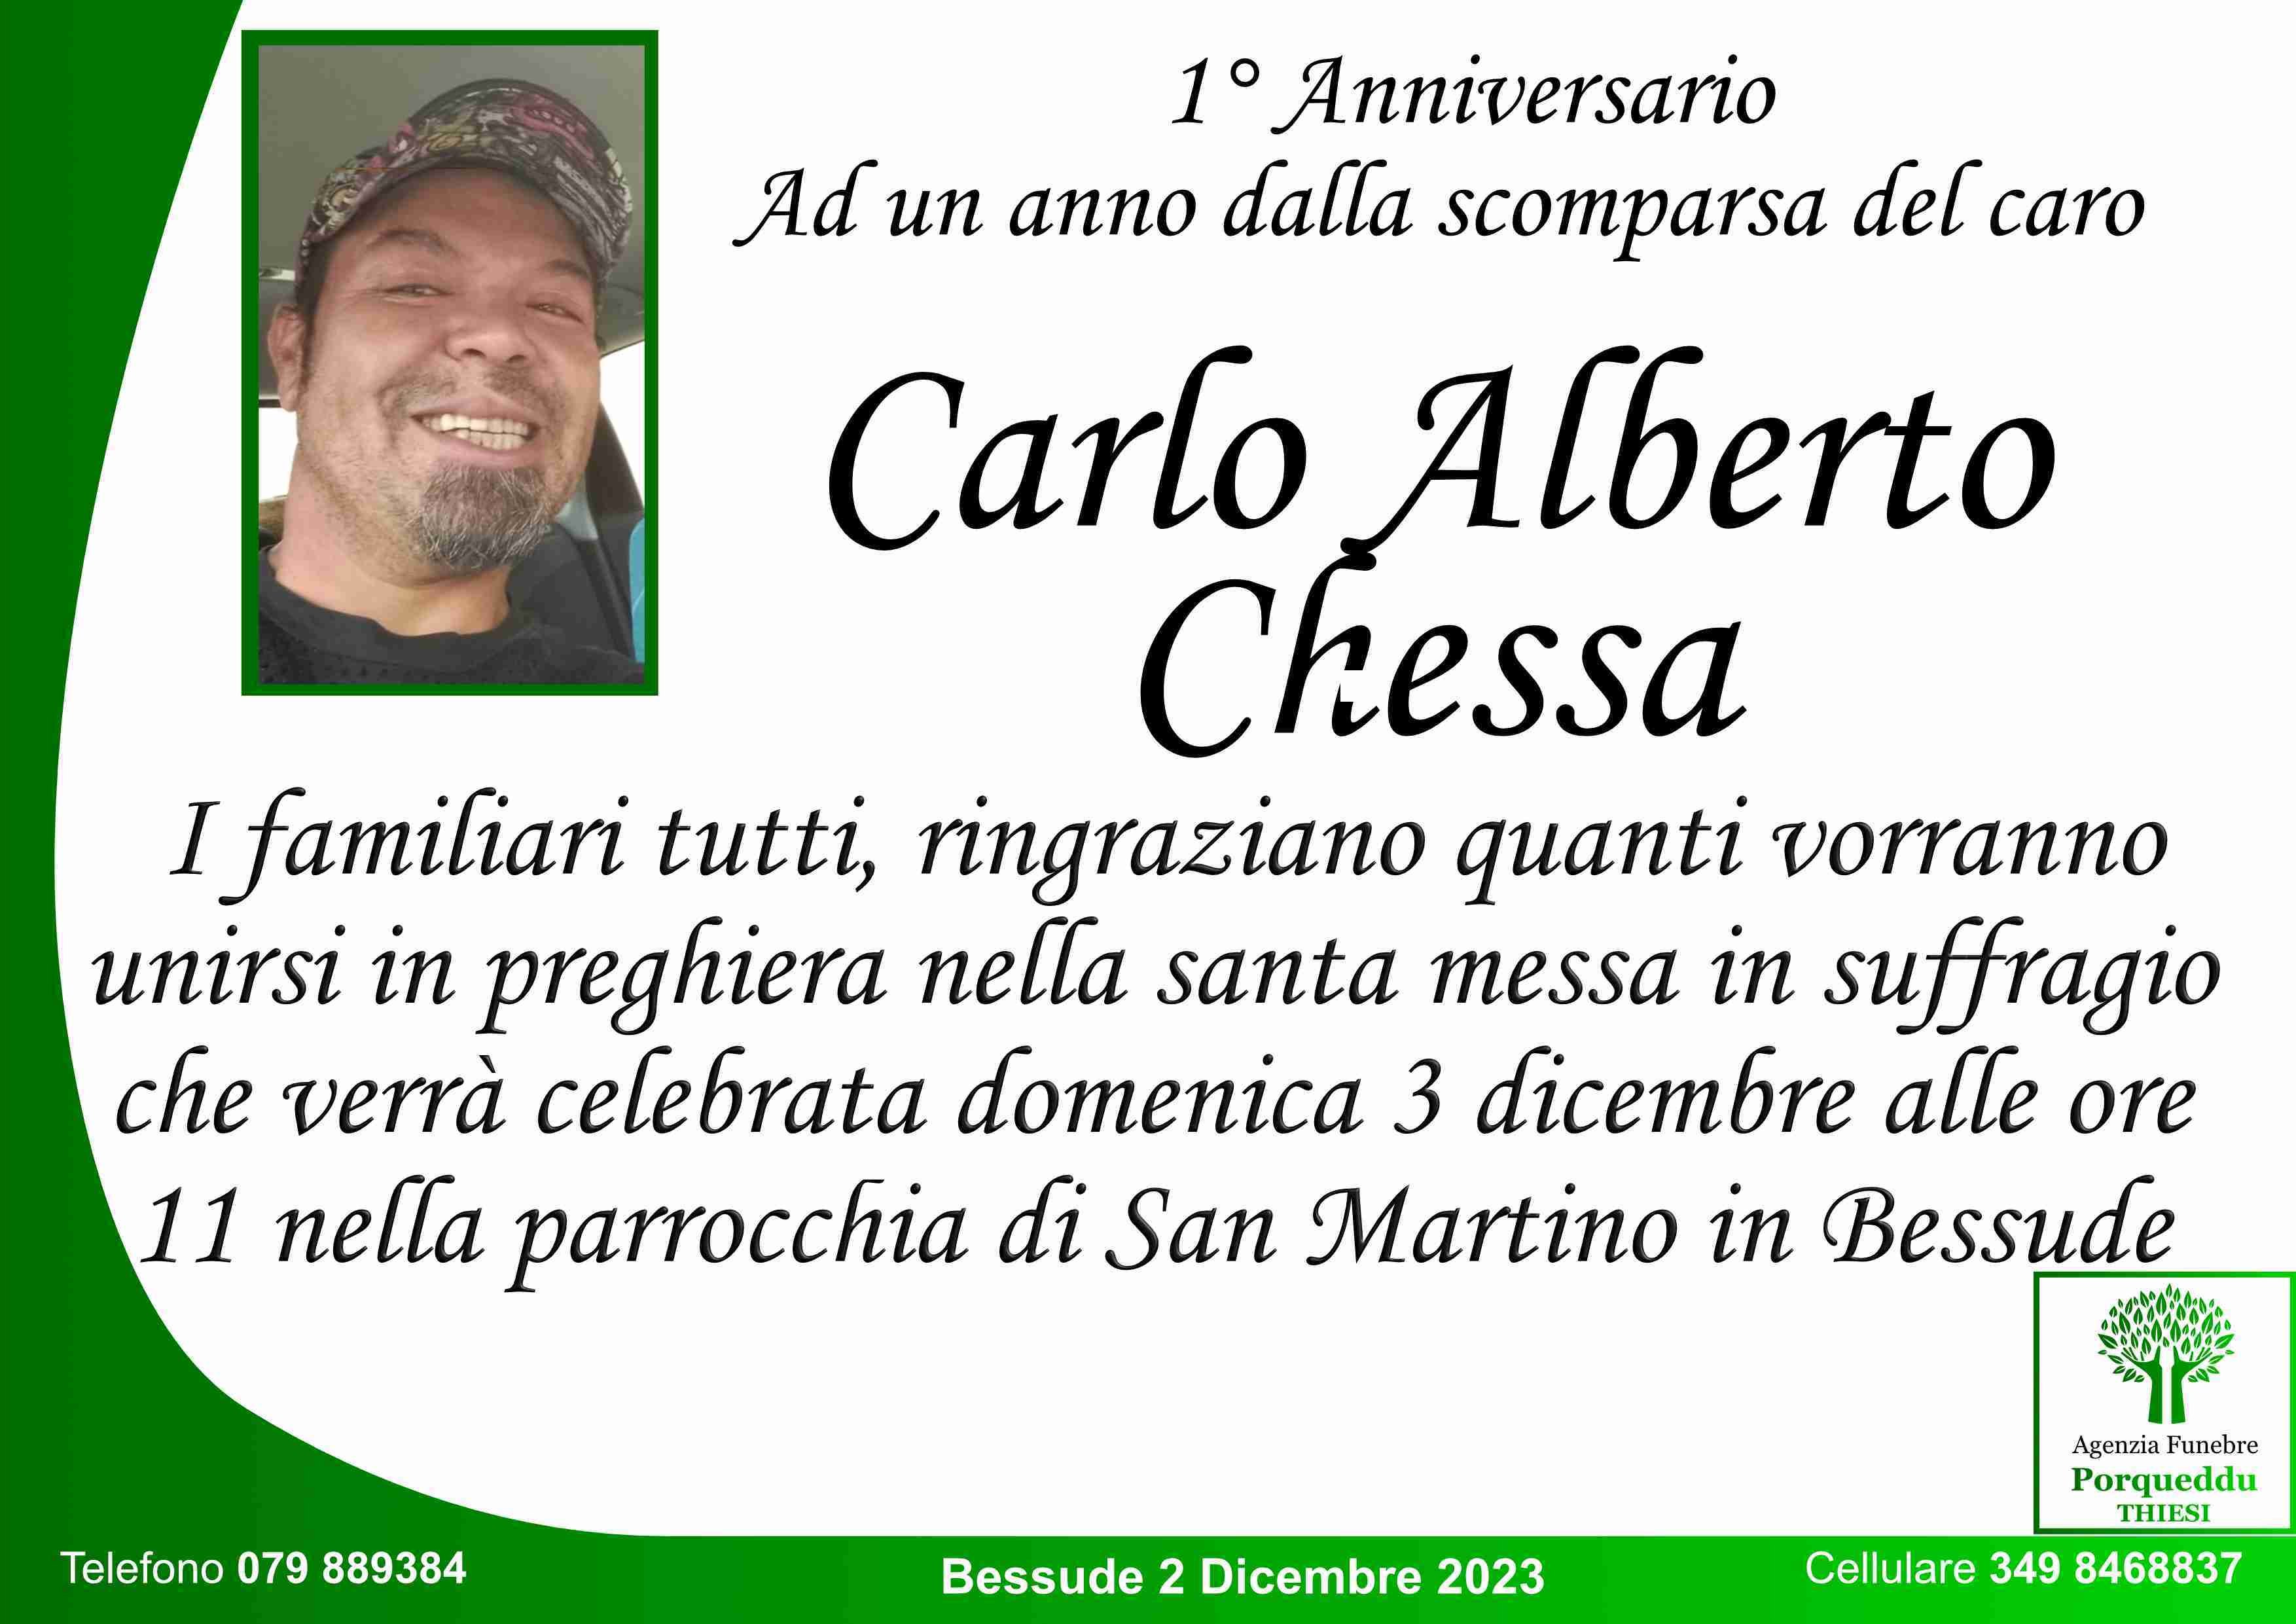 Carlo Alberto Chessa